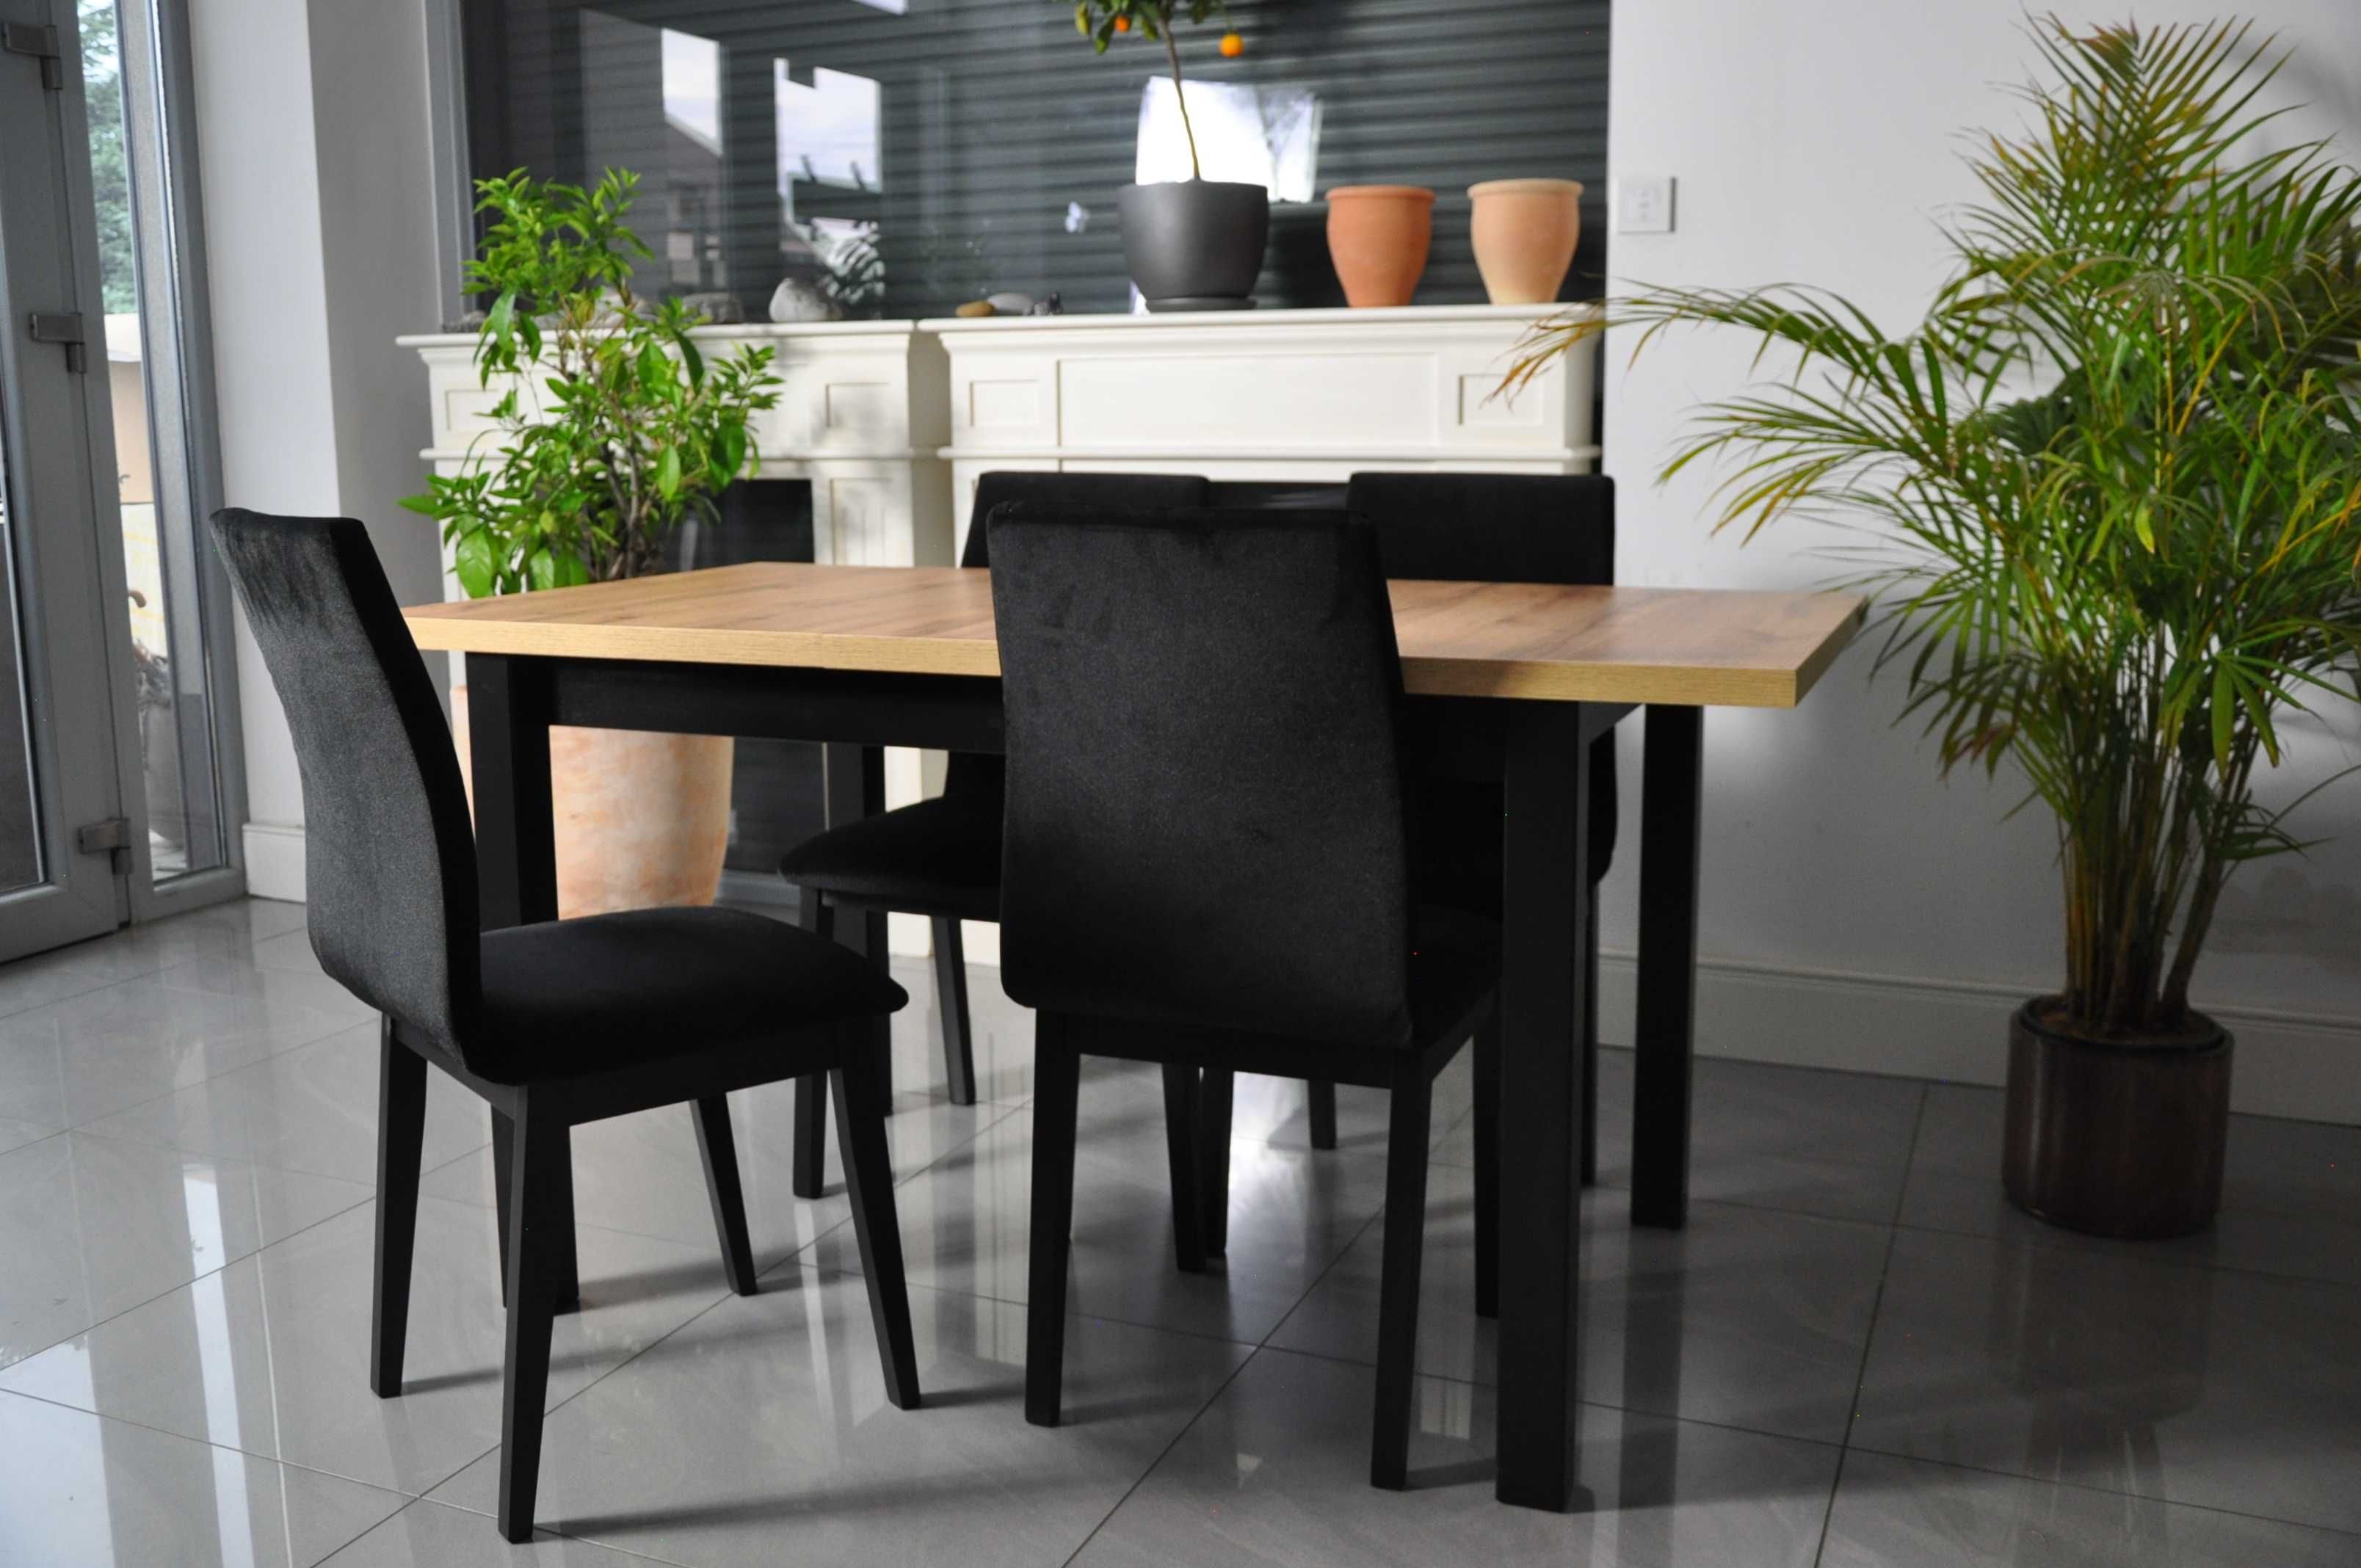 PROMOCJA - Zestaw Elegant Stół Rozkładany + Krzesła